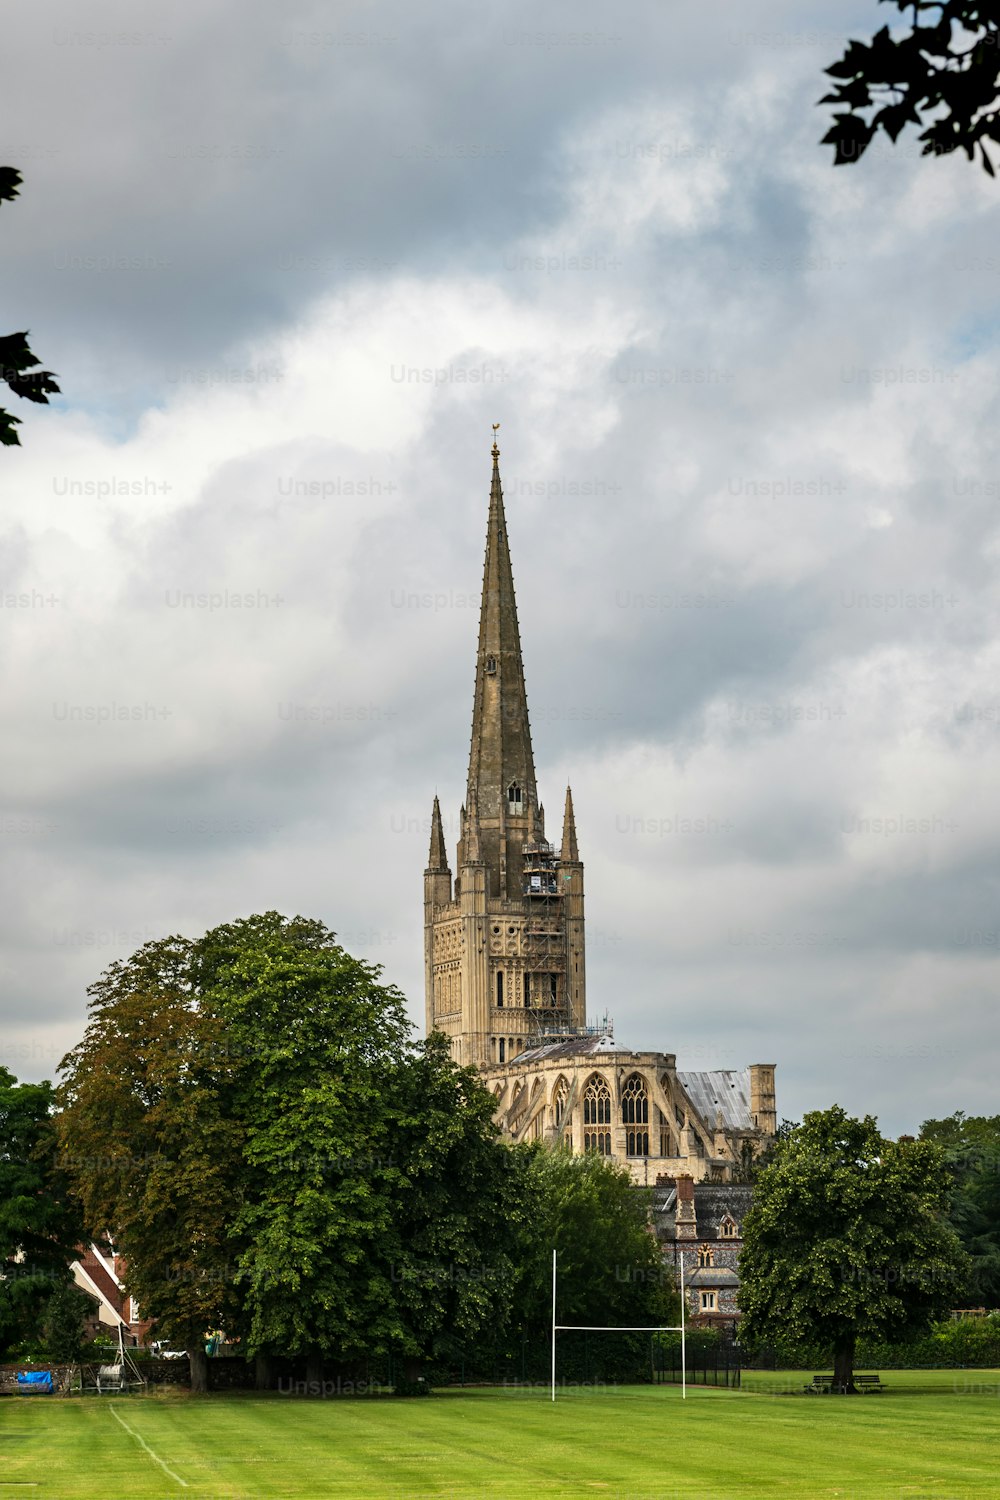 Vue arrière de la cathédrale de Norwich contre un ciel nuageux, un temple dédié à la Sainte et indivise Trinité achevé en 1145.